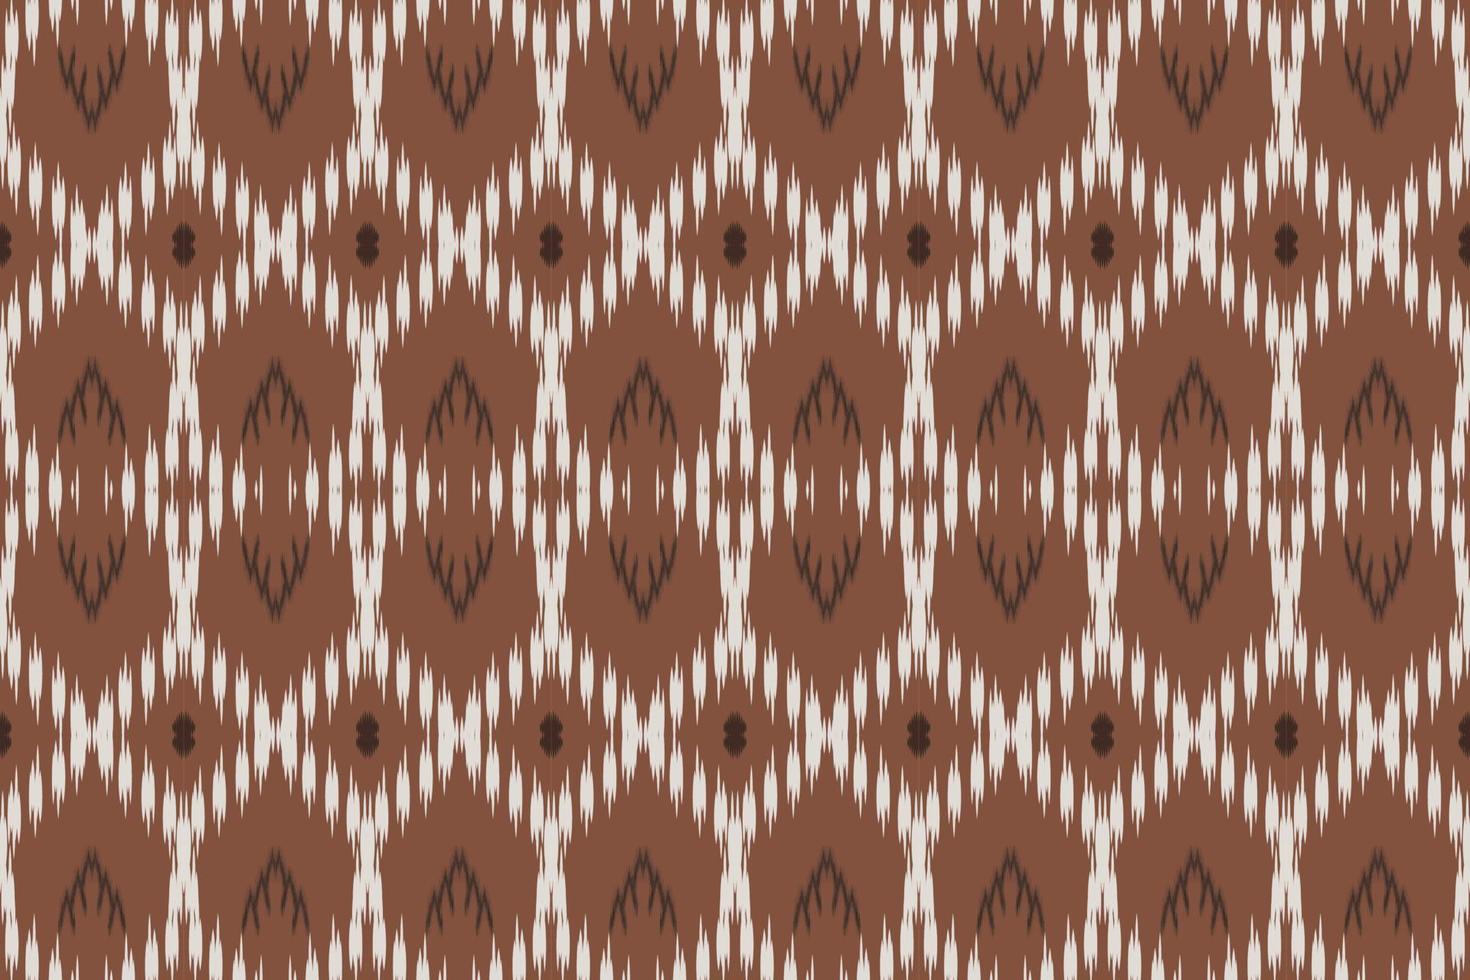 motiv ikat prickar stam- afrikansk borneo scandinavian batik bohemisk textur digital vektor design för skriva ut saree kurti tyg borsta symboler färgrutor